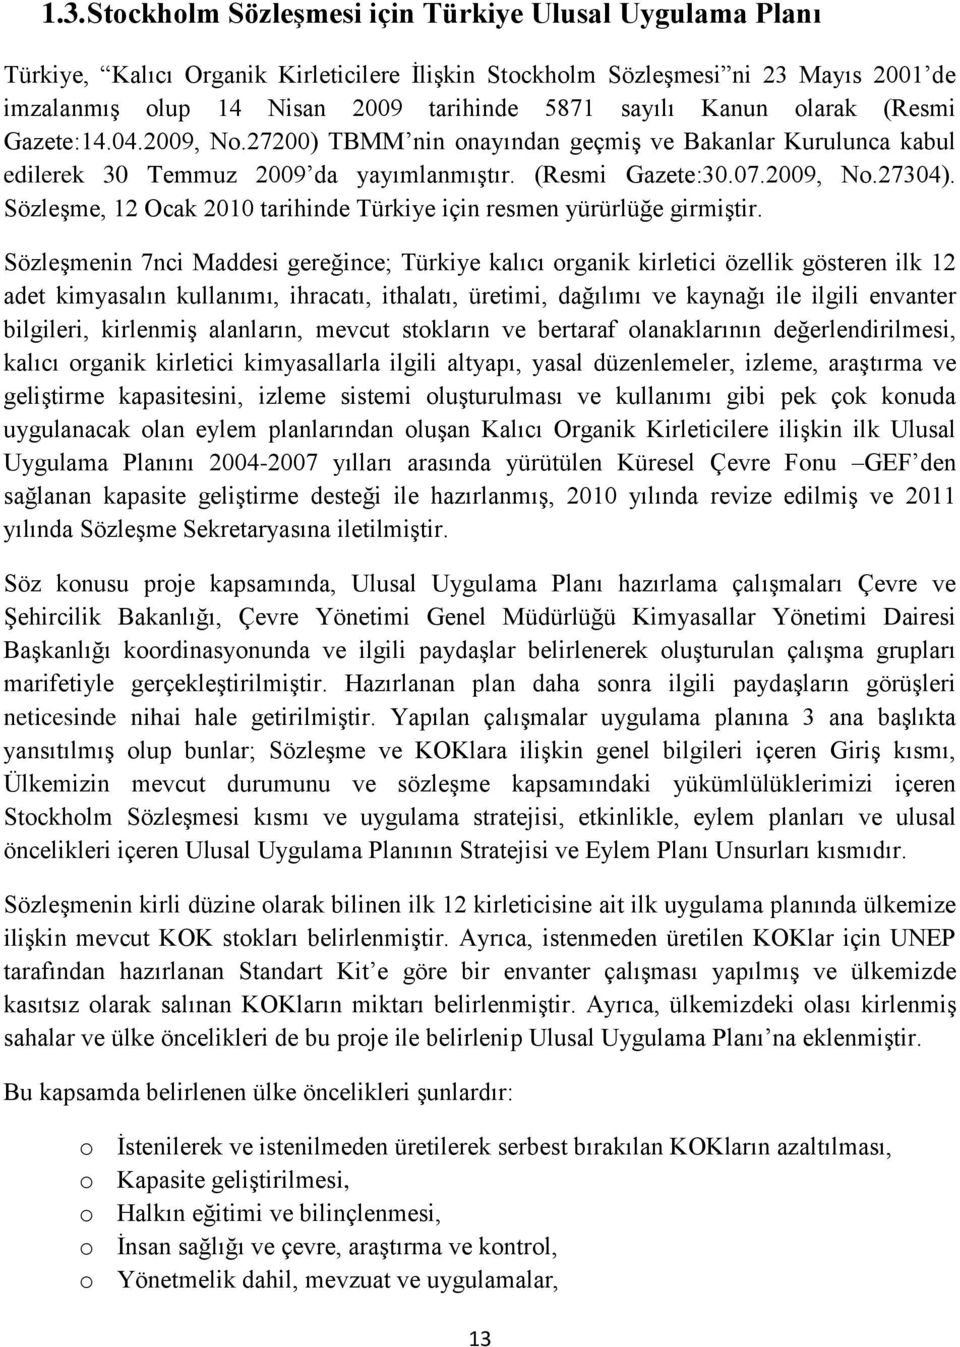 Sözleşme, 12 Ocak 2010 tarihinde Türkiye için resmen yürürlüğe girmiştir.